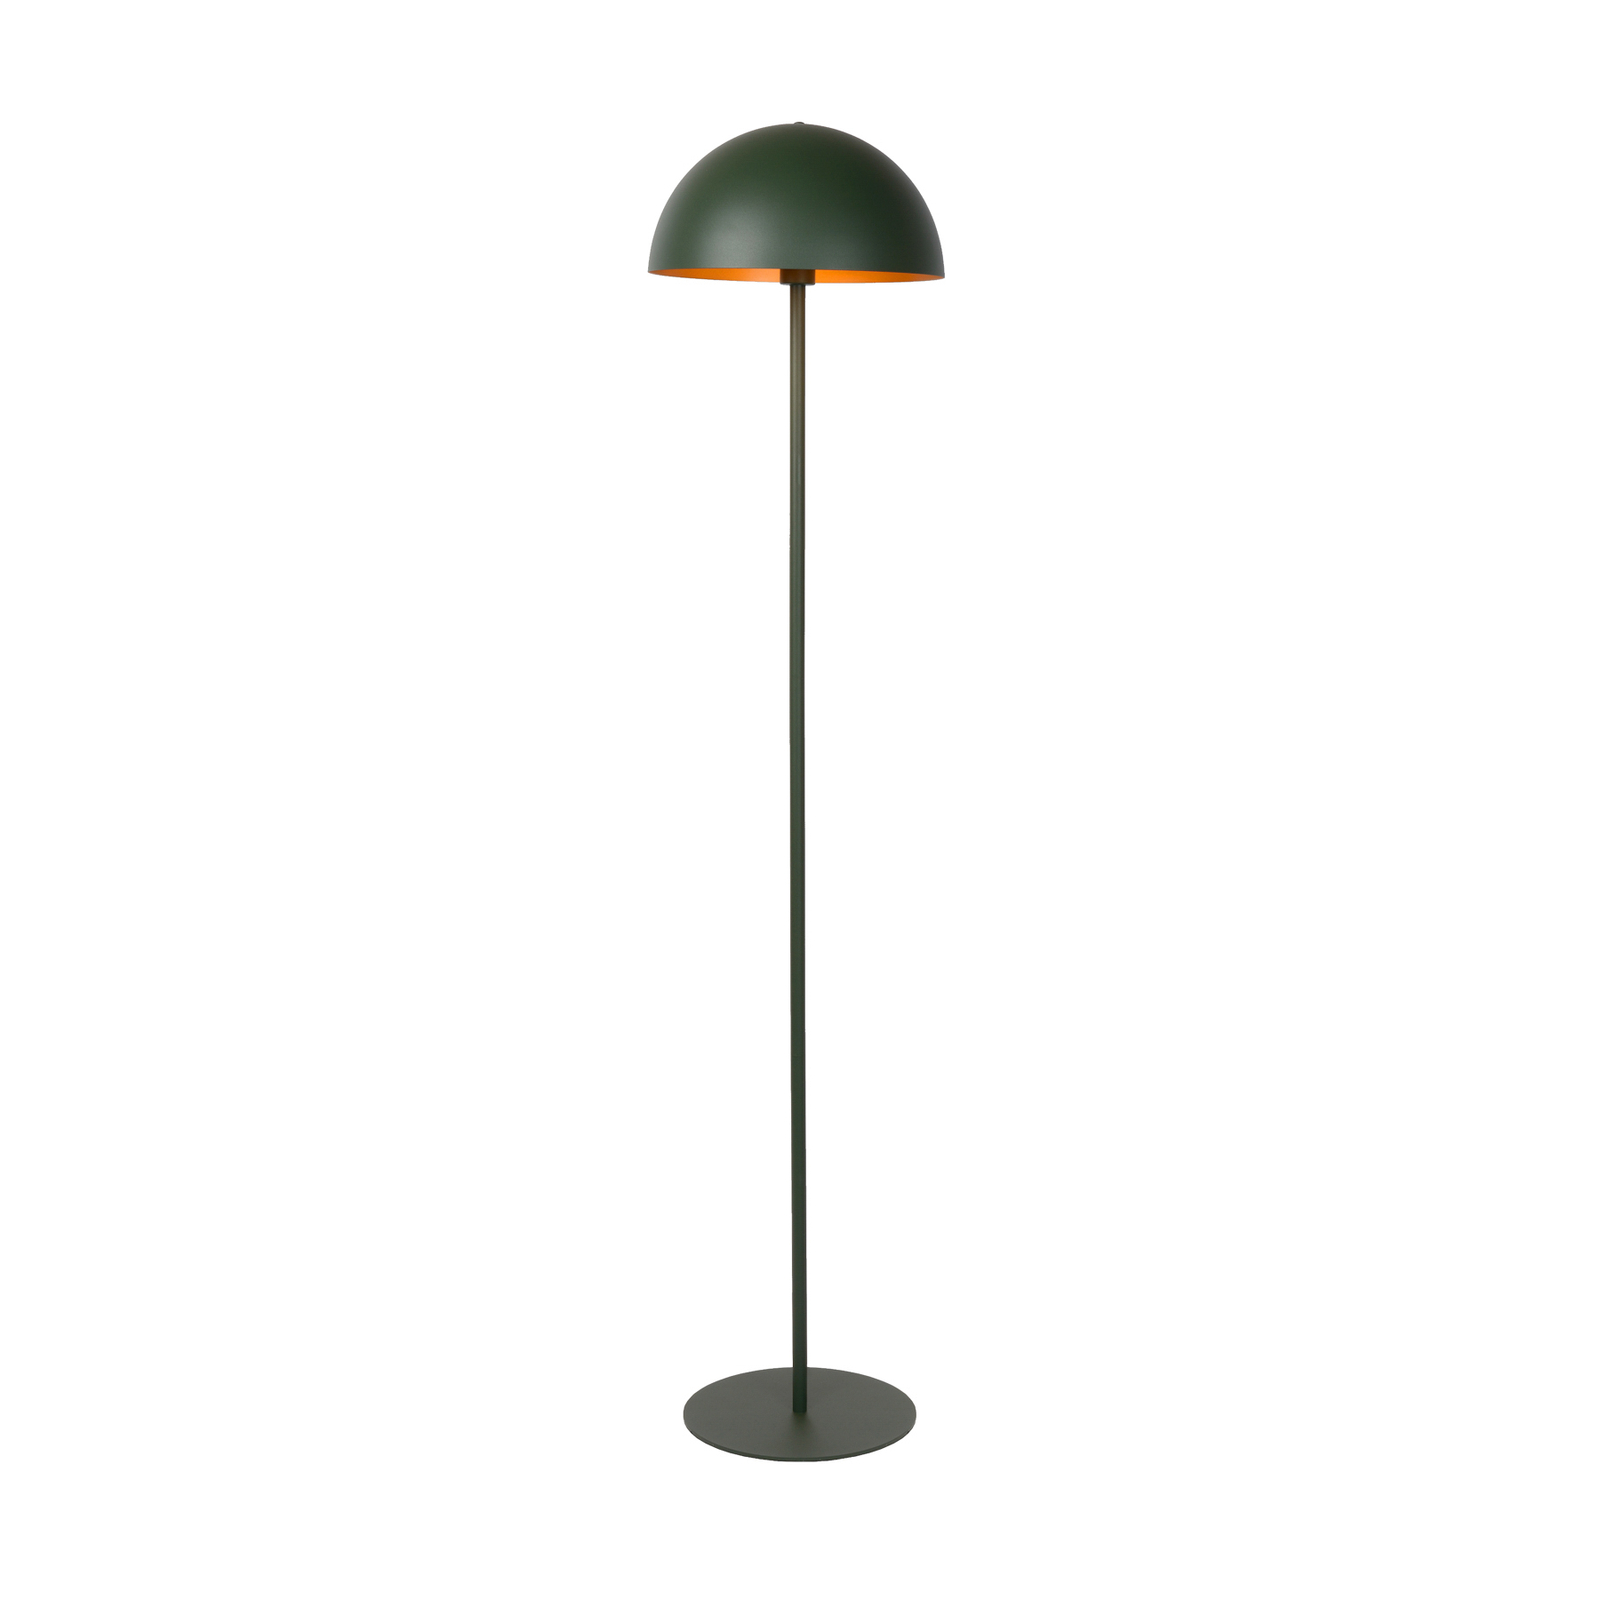 Siemon lampadar din oțel, Ø 35 cm, verde